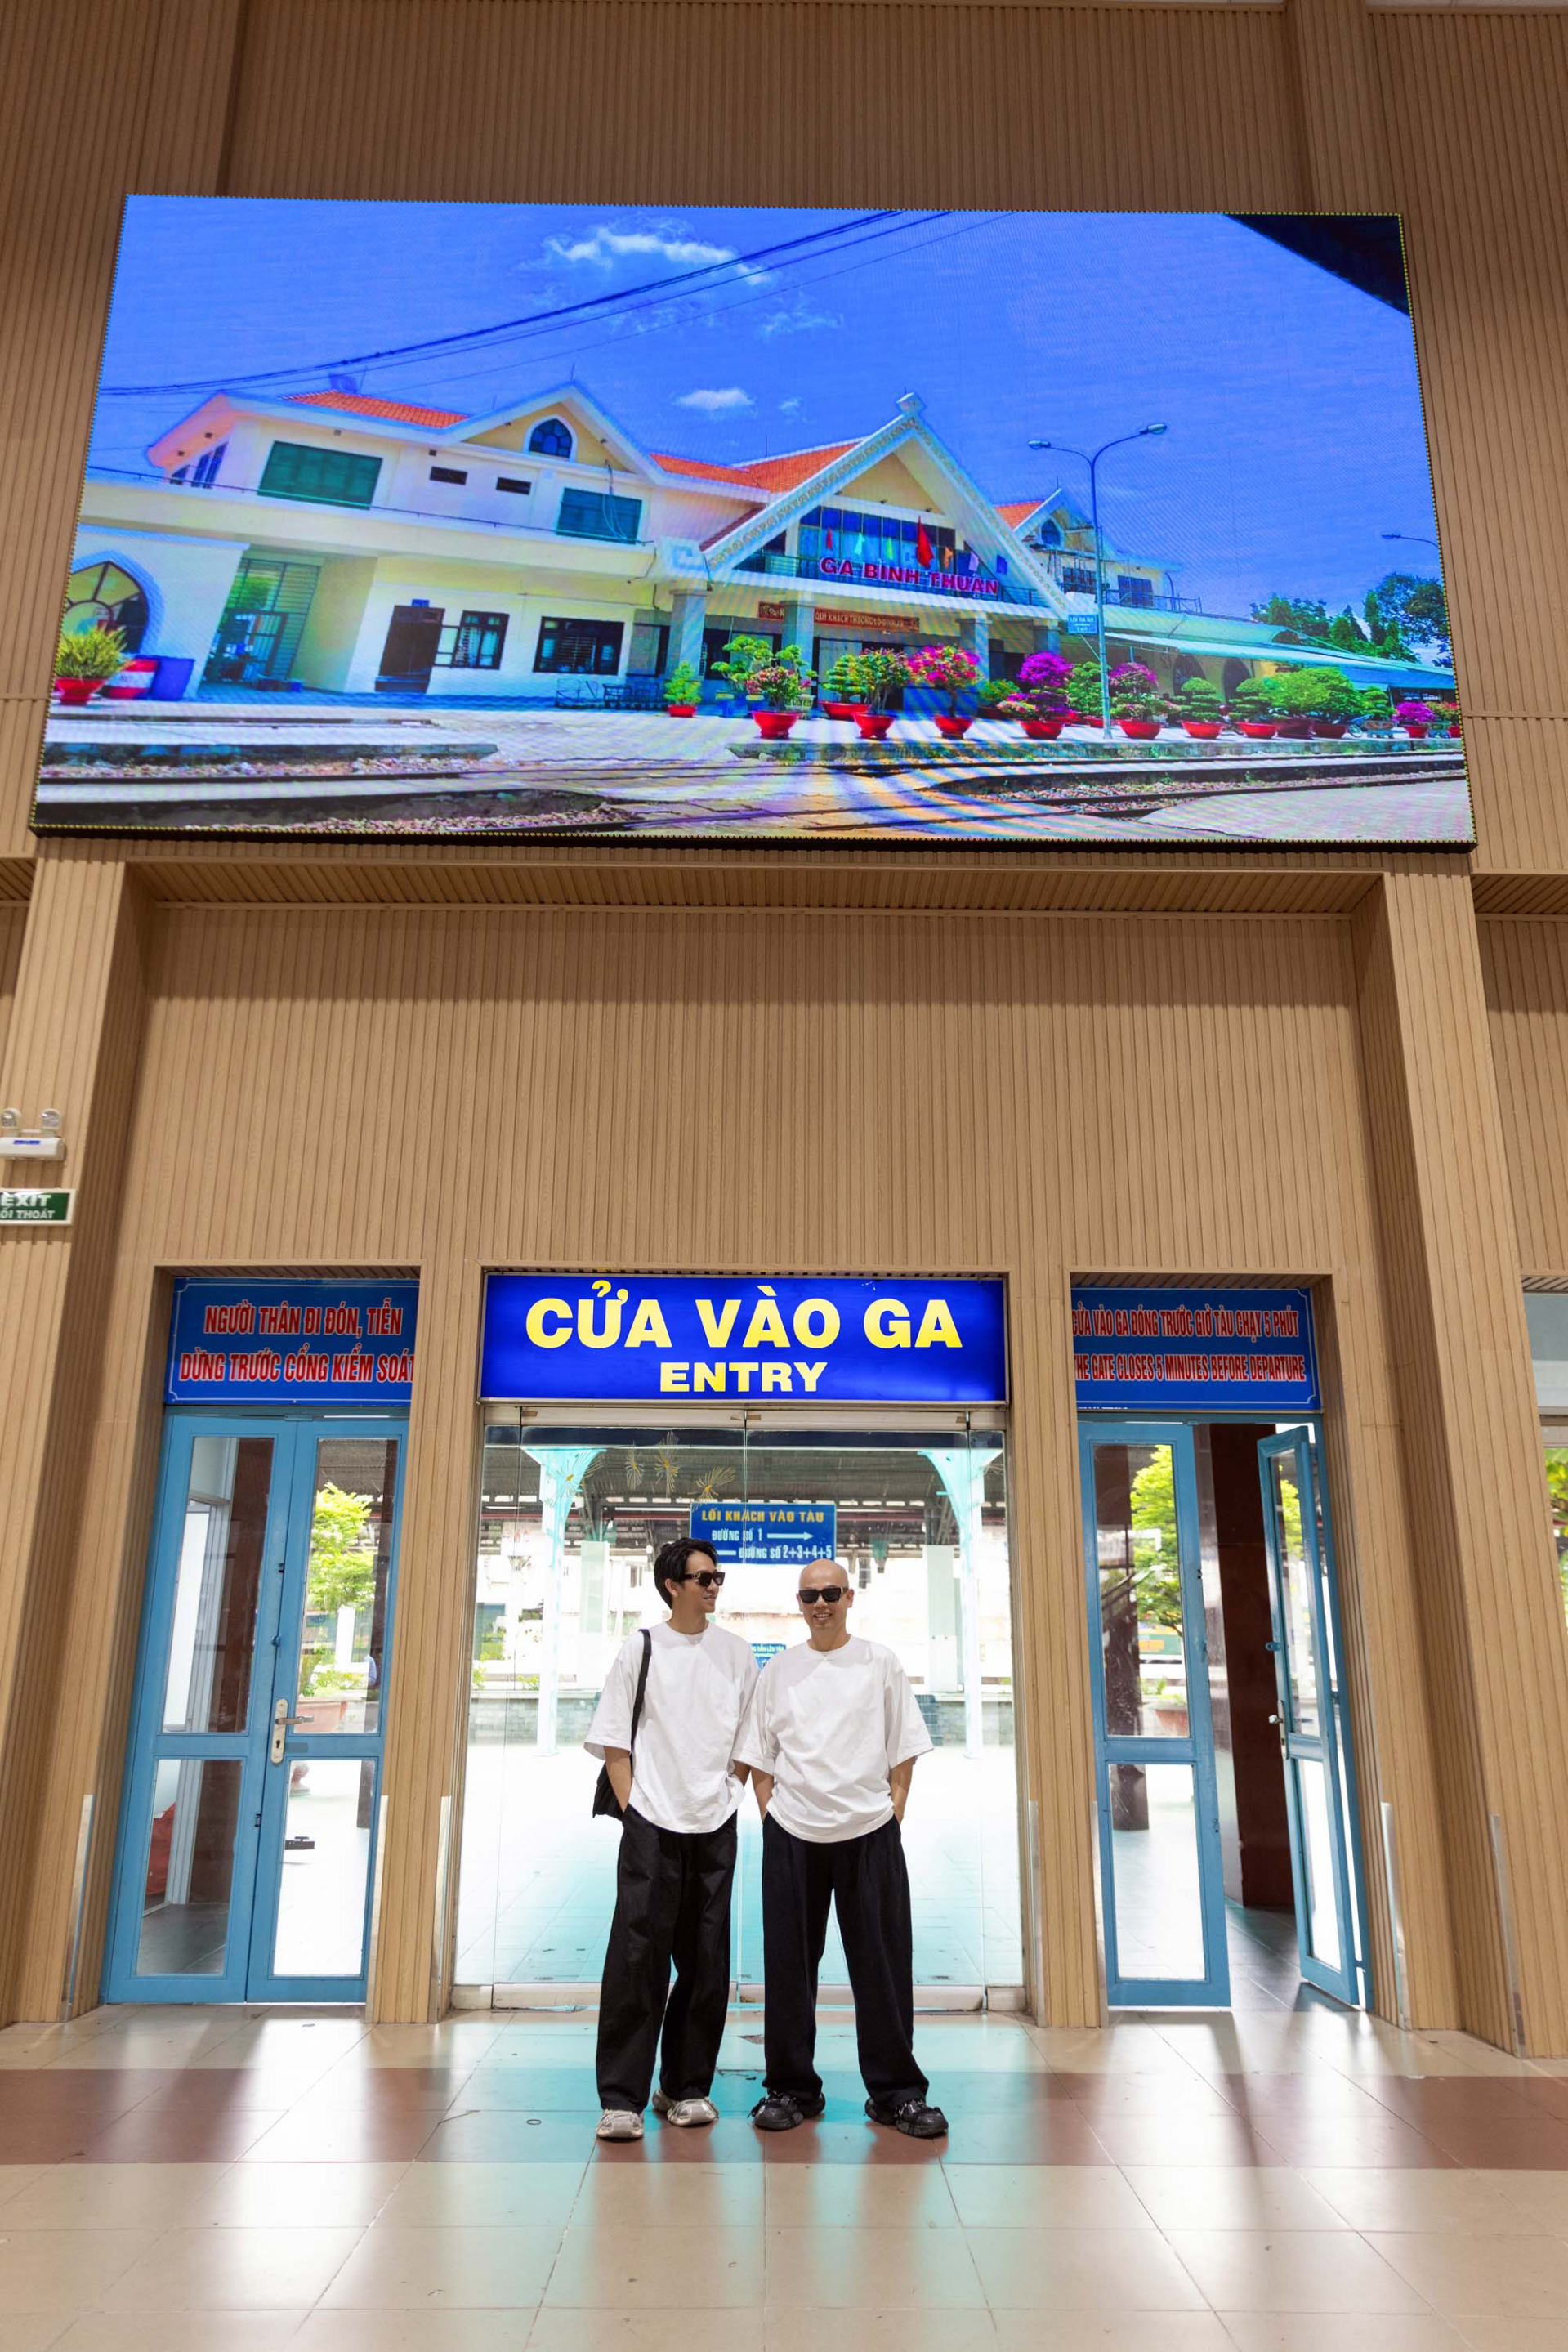 Hơn 100 thiết kế mới của bộ đôi NTK VUNGOC&SON sẽ được trình làng ở ga Sài Gòn - ảnh 1